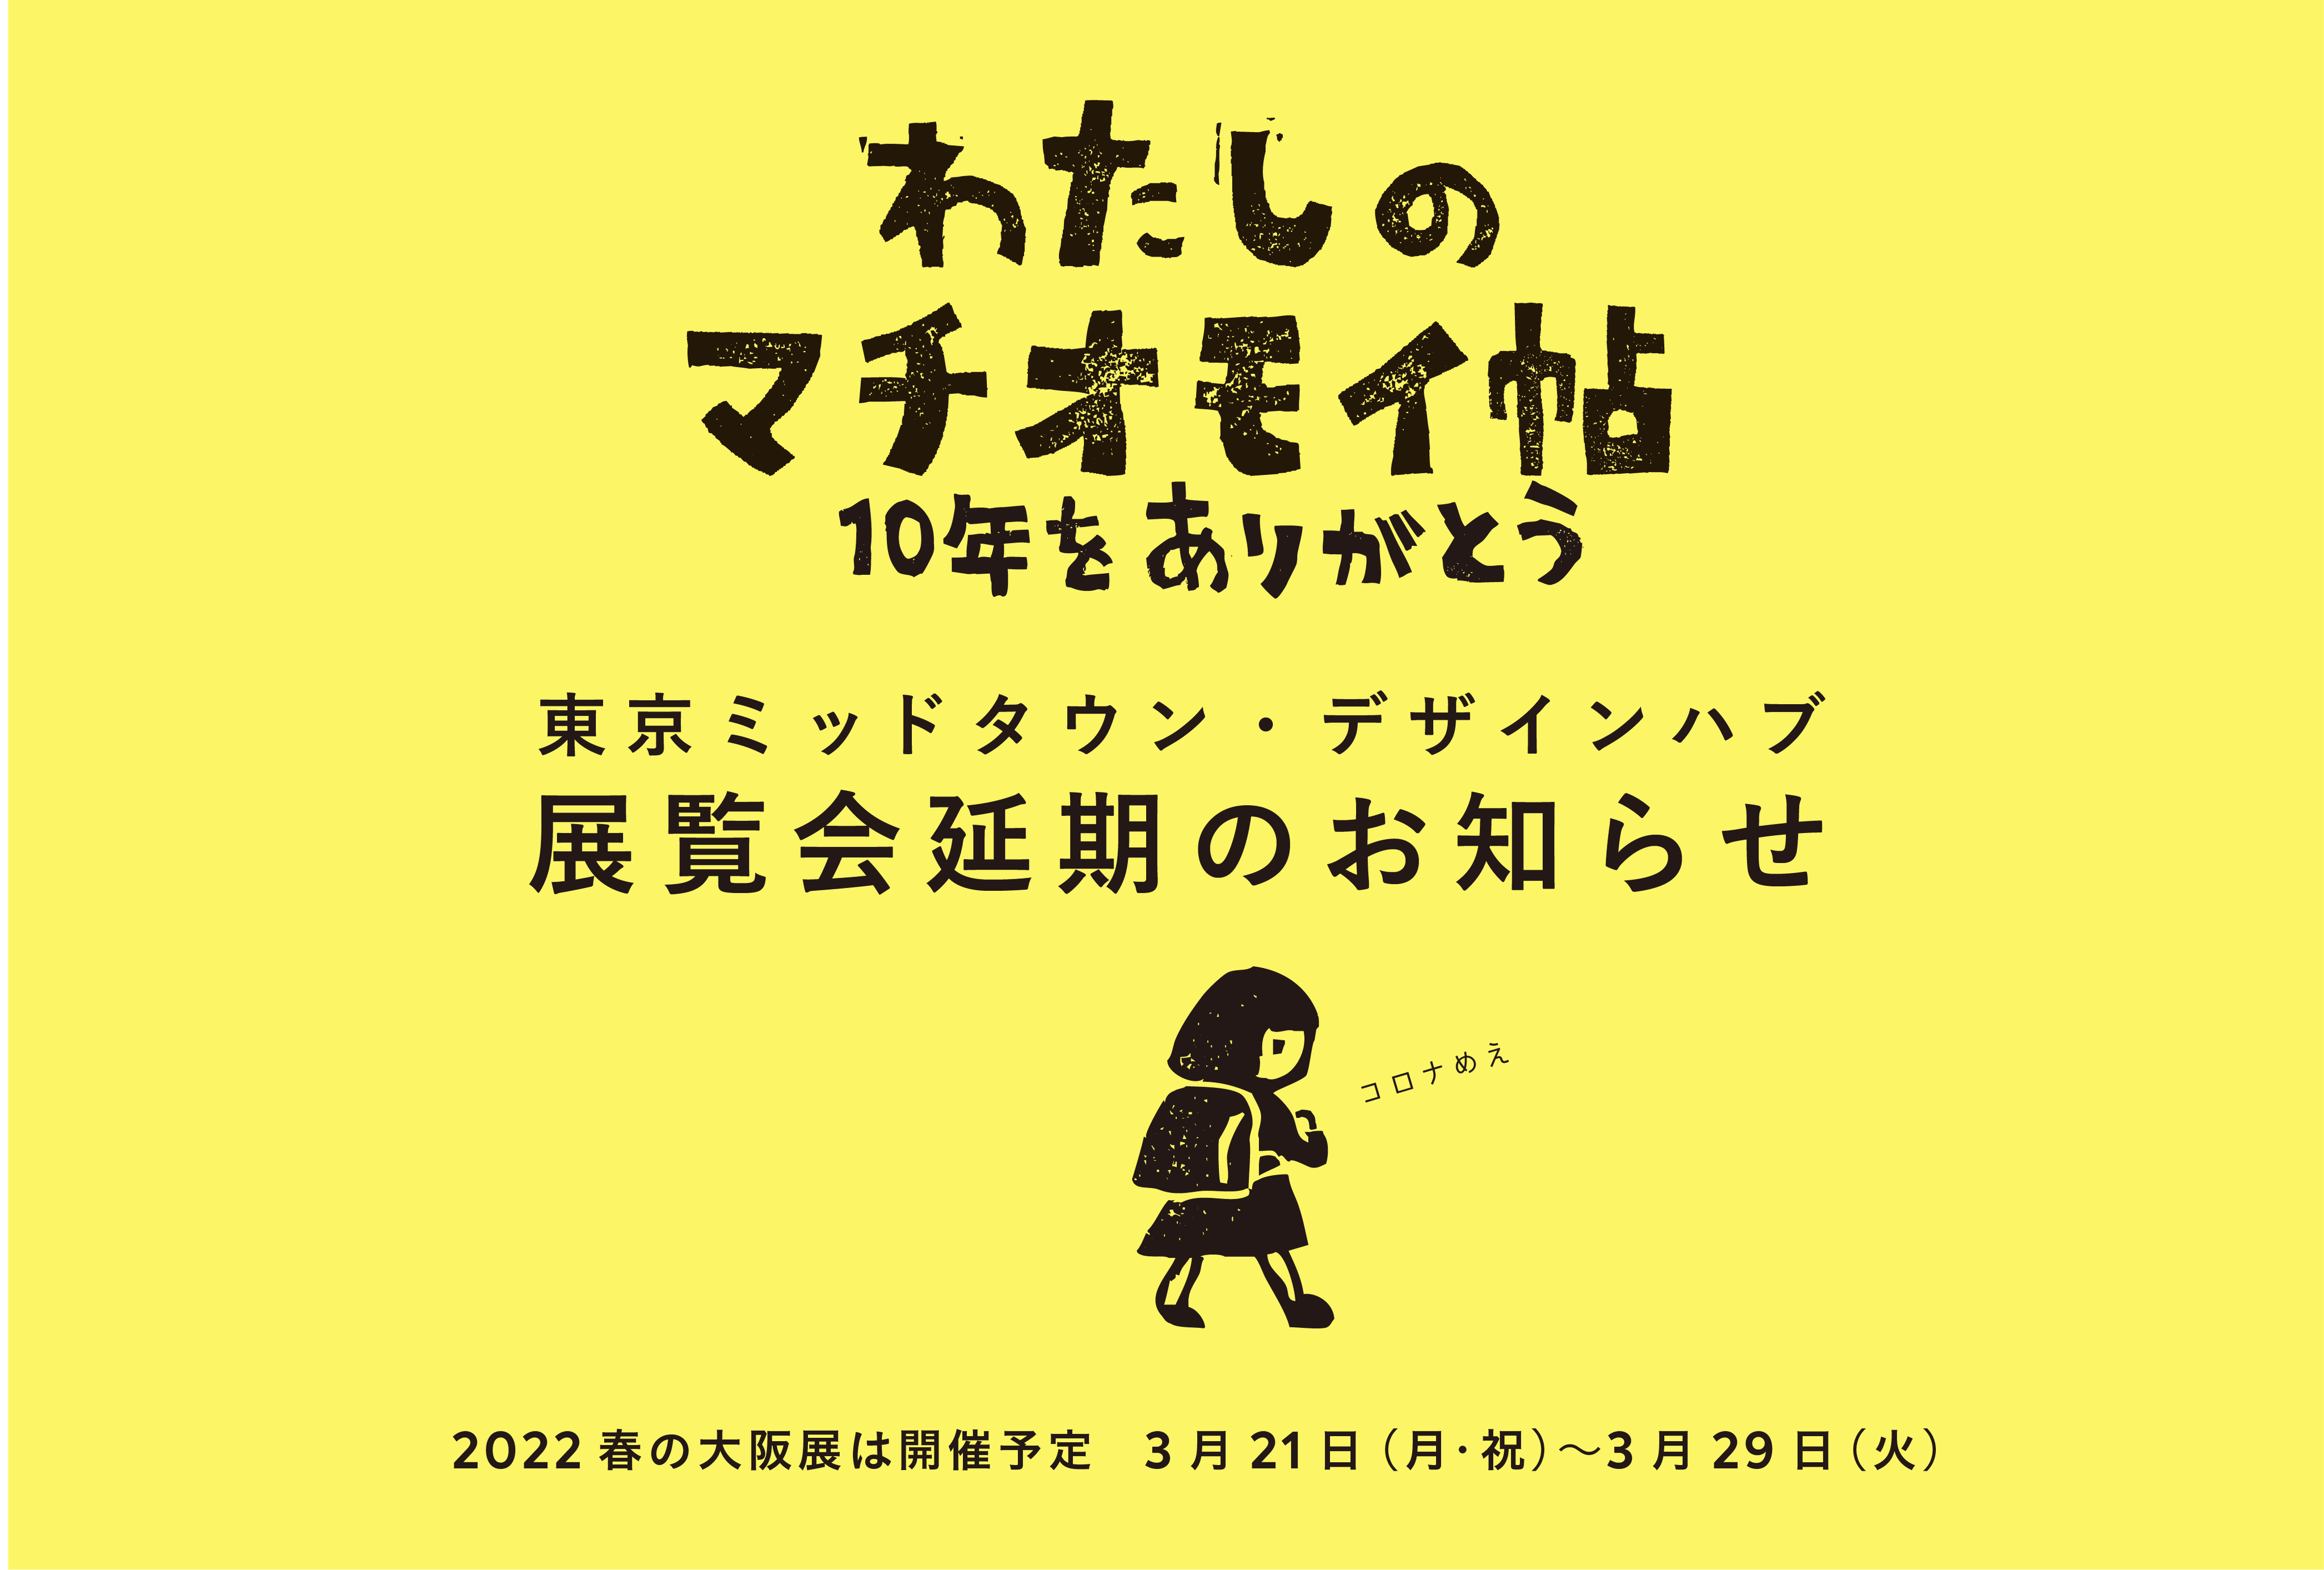 2022 春の大阪「わたしのマチオモイ帖」に出展します。３月21日(月•祝)〜29日(火)